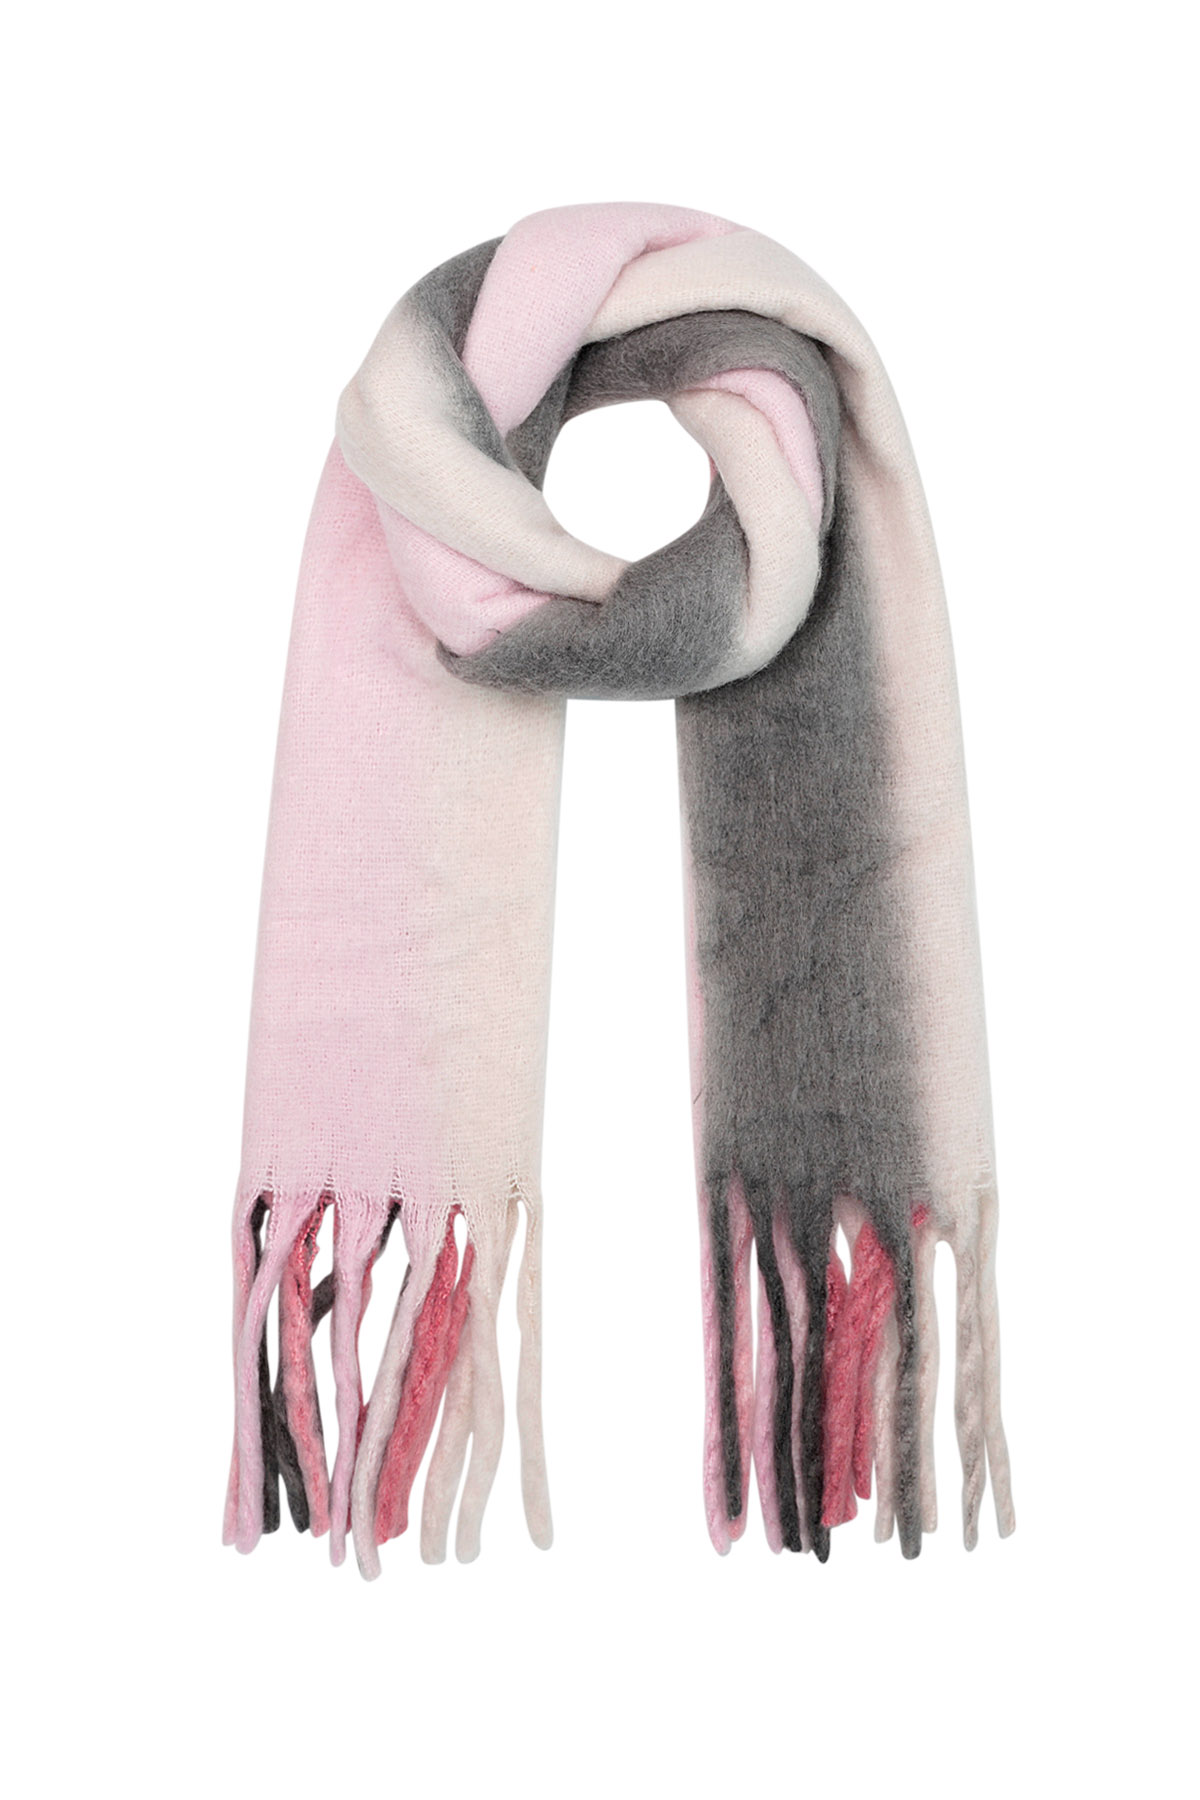 Bufanda de invierno colores degradados rosa/gris Poliéster h5 